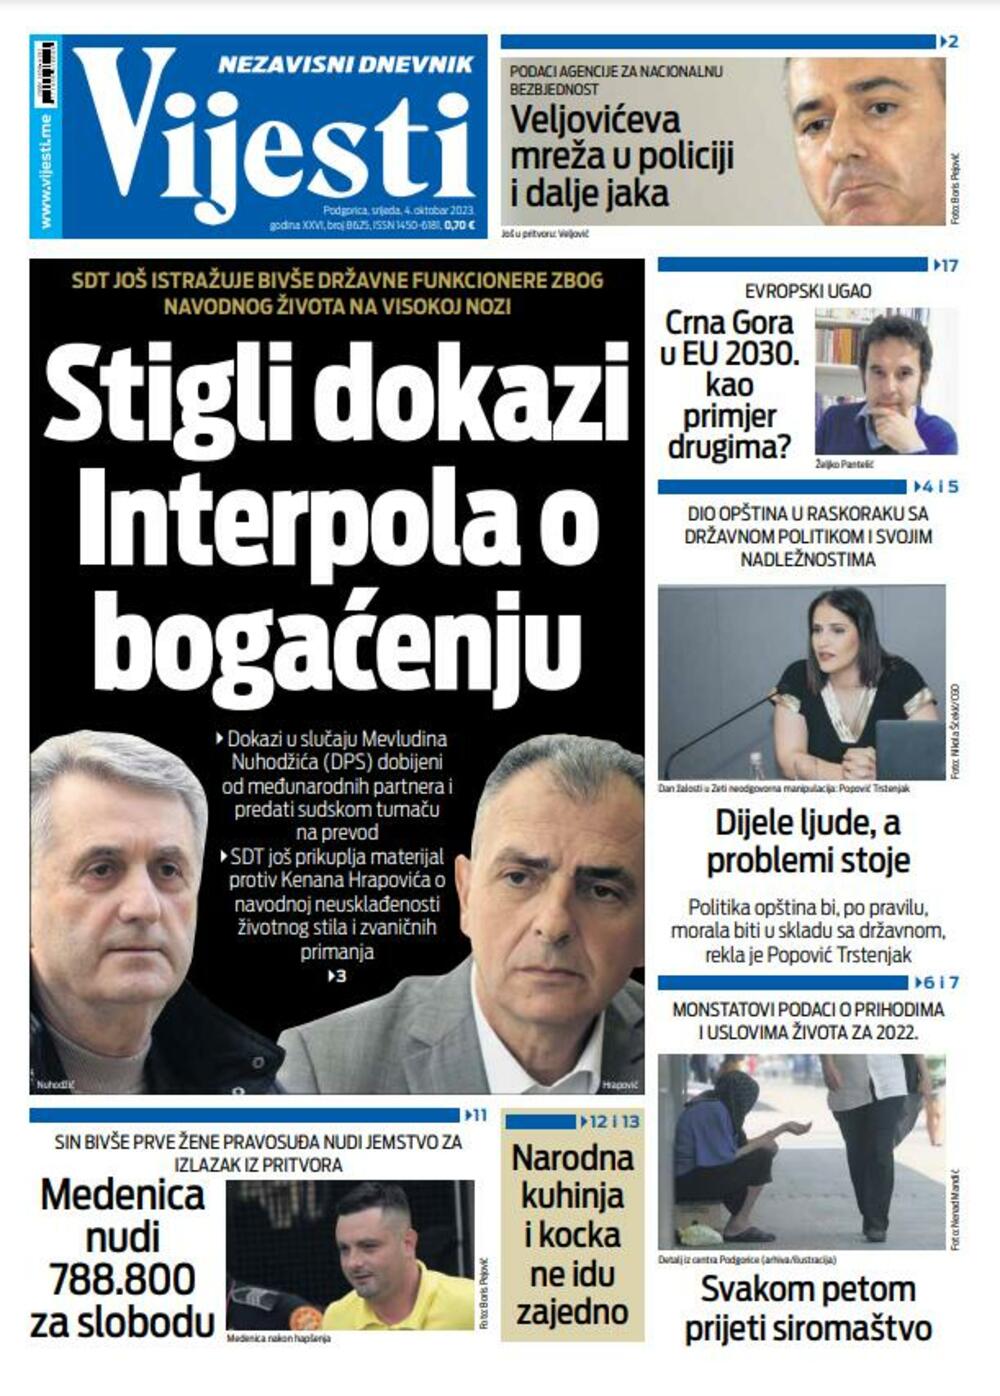 Naslovna strana "Vijesti" za 4. oktobar 2023., Foto: Vijesti